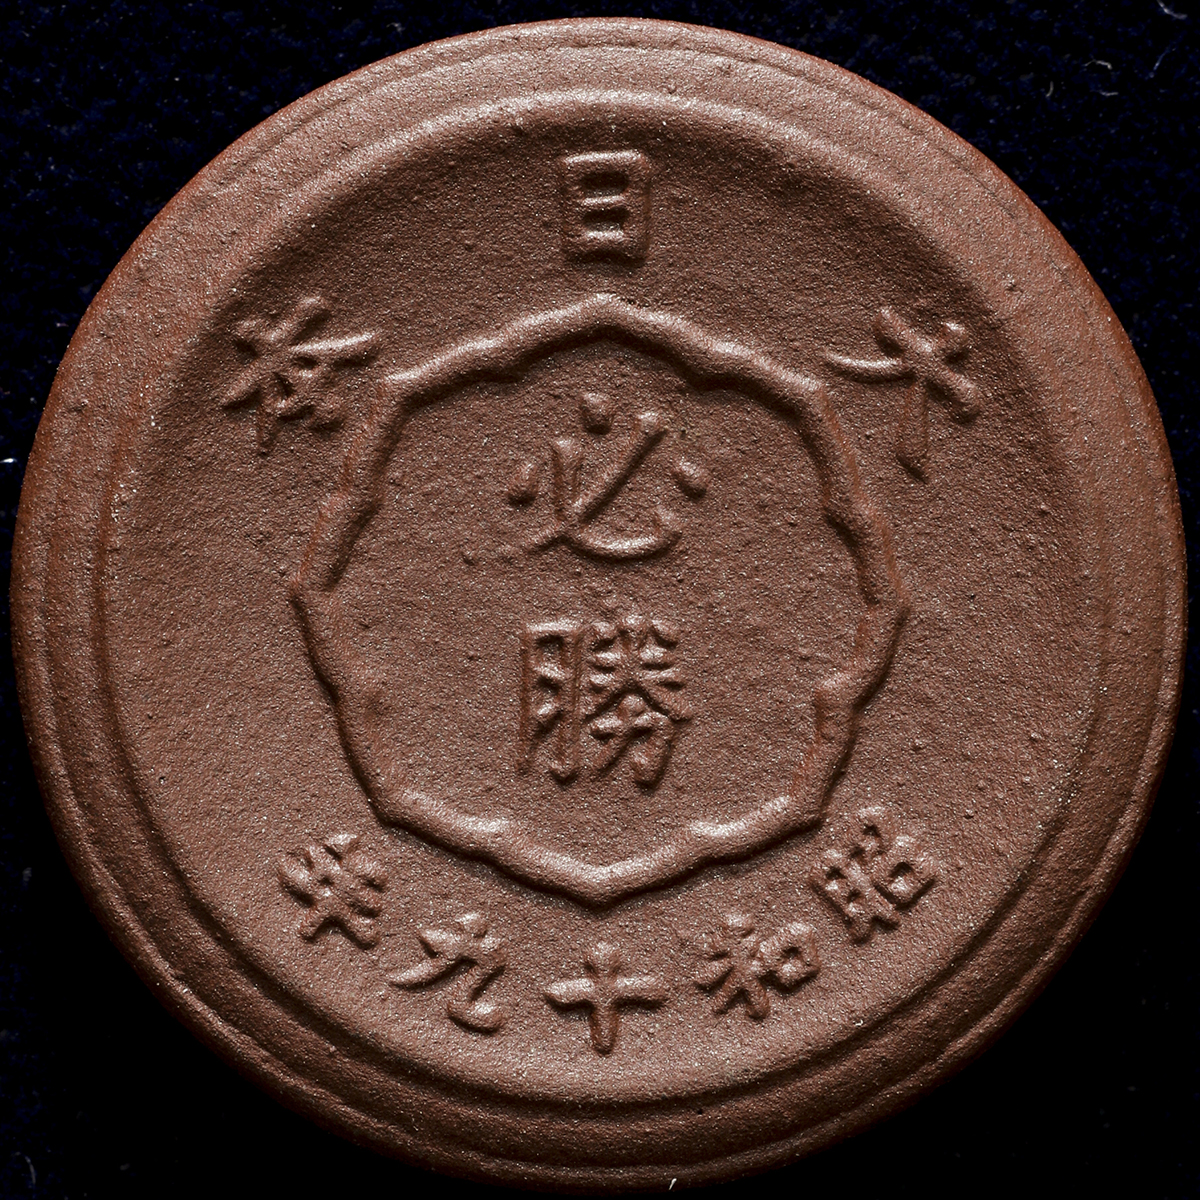 貨幣博物館 | 日本 未発行十銭褐色陶貨 Pattern10Sen in Brown Porcelain 昭和19年(1944) UNC